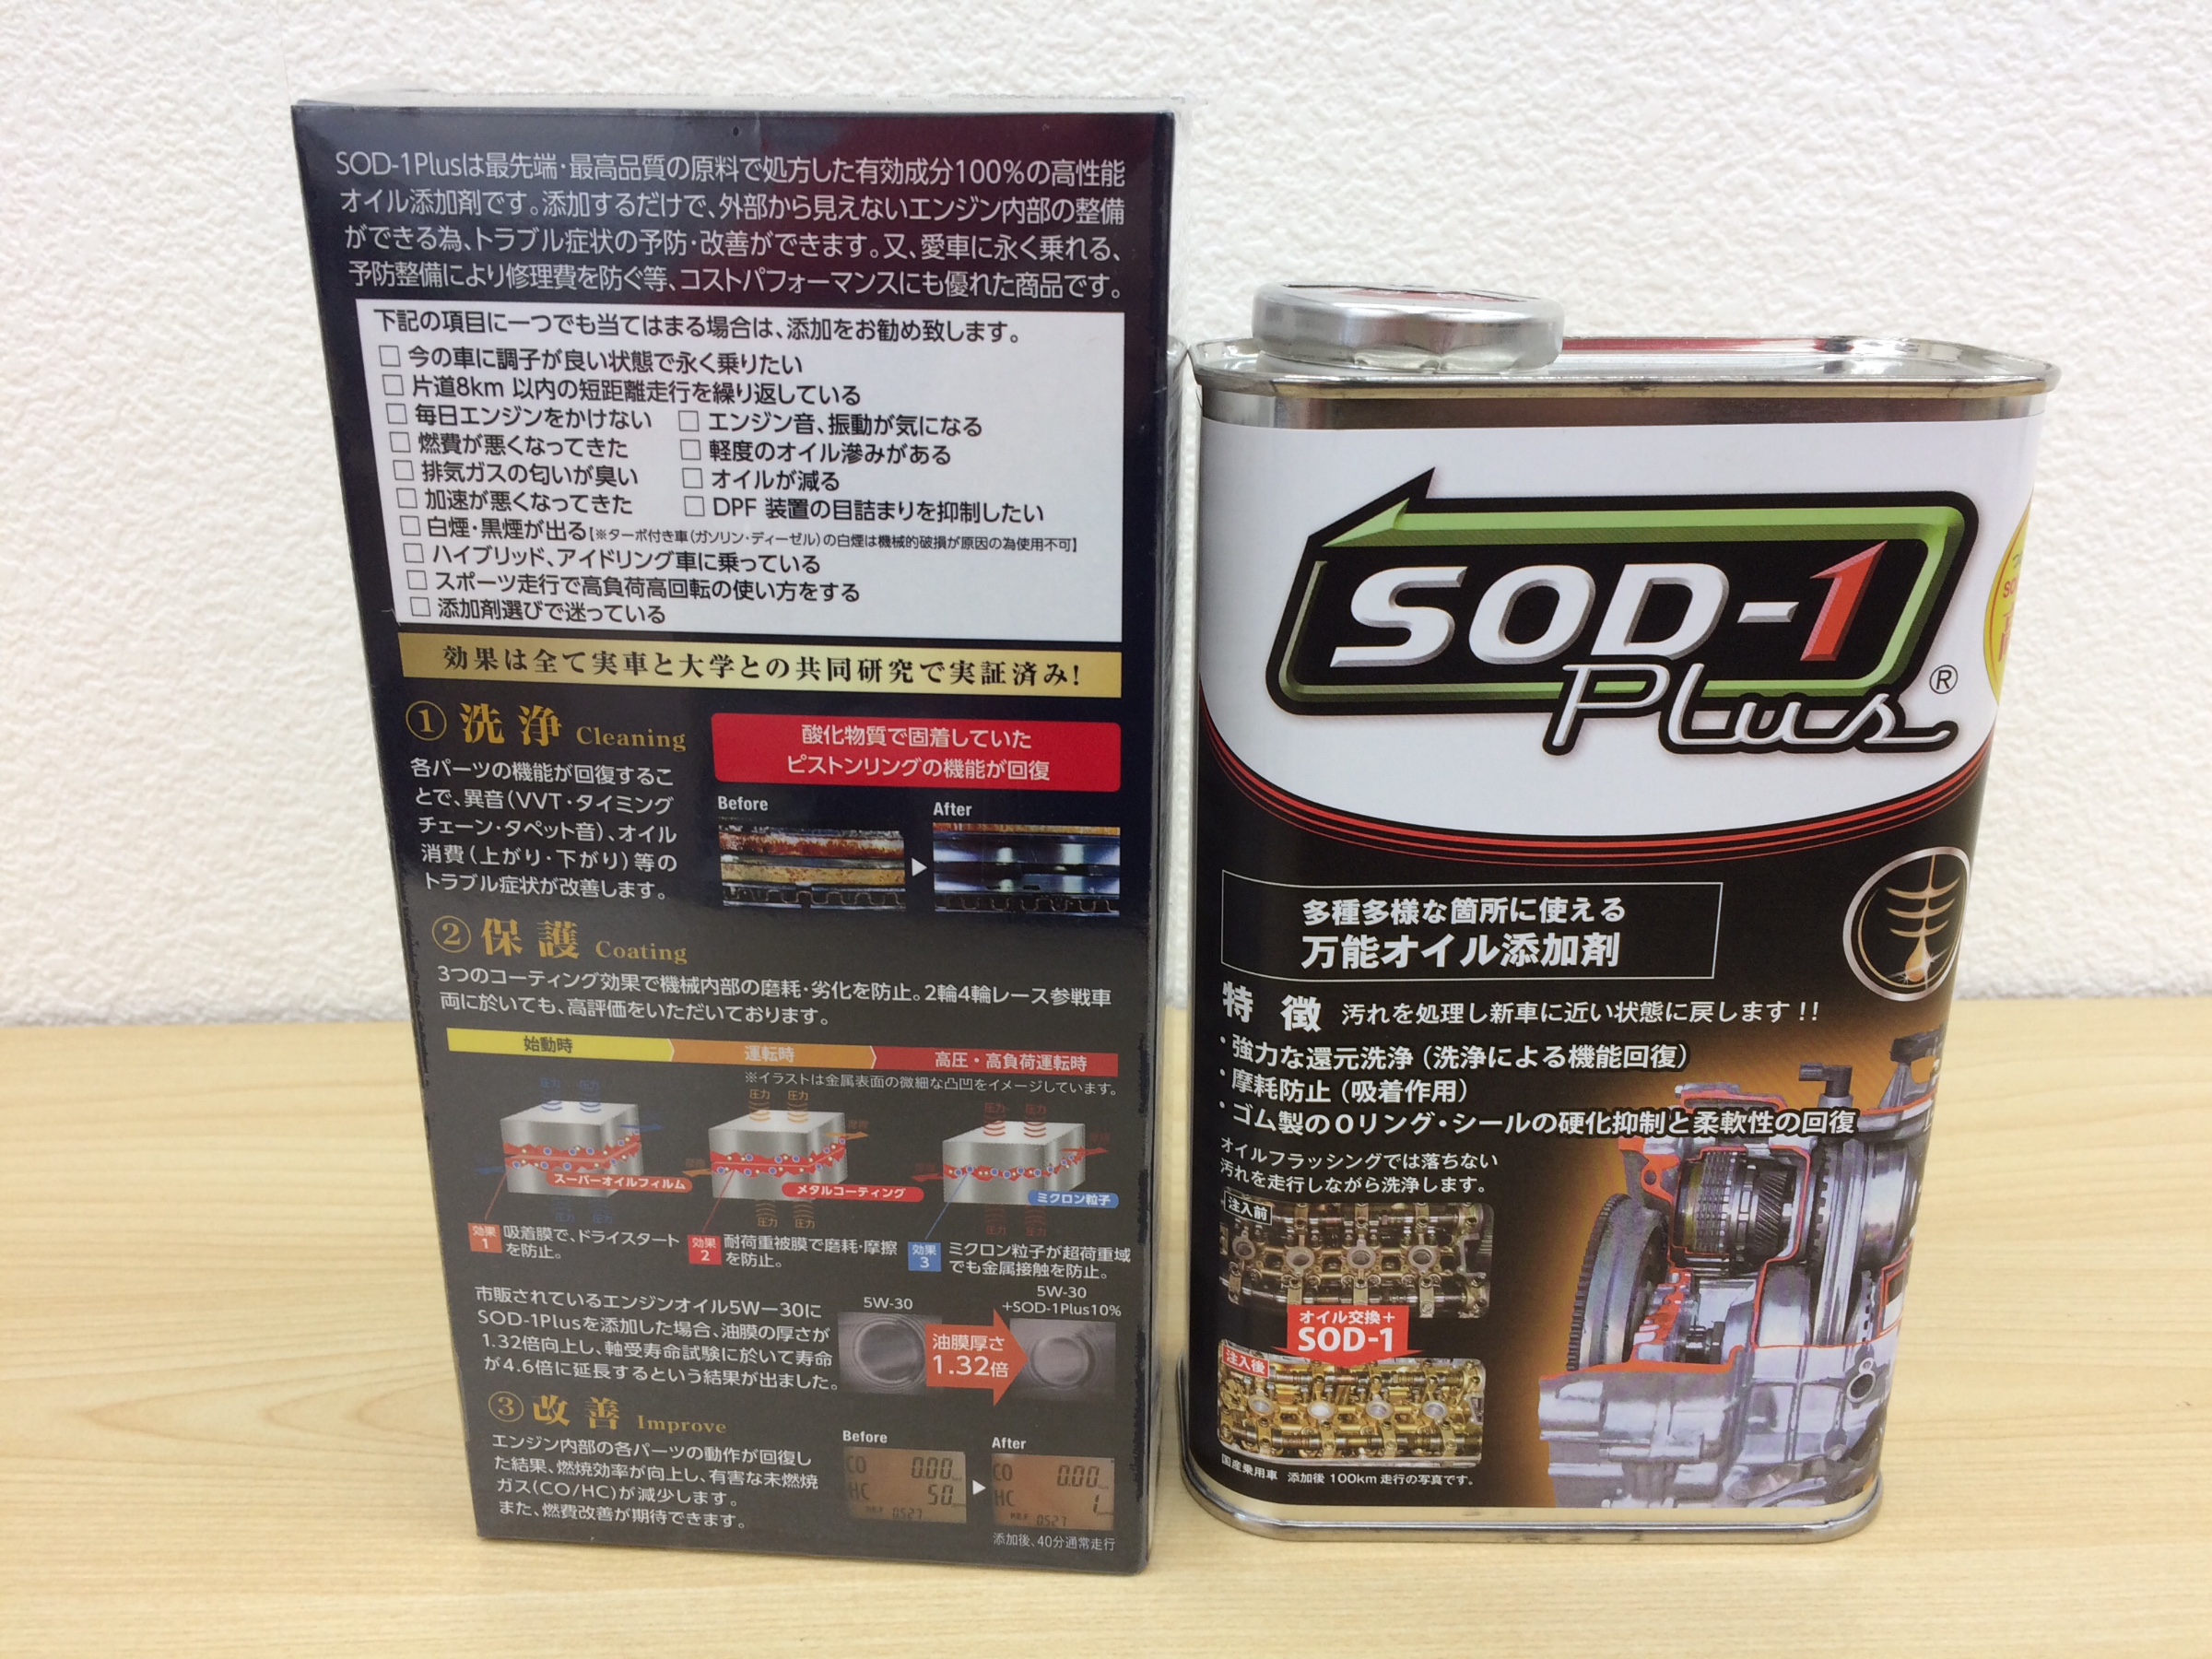 新品未使用 SOD-1 Plus 1L - fjd.jp